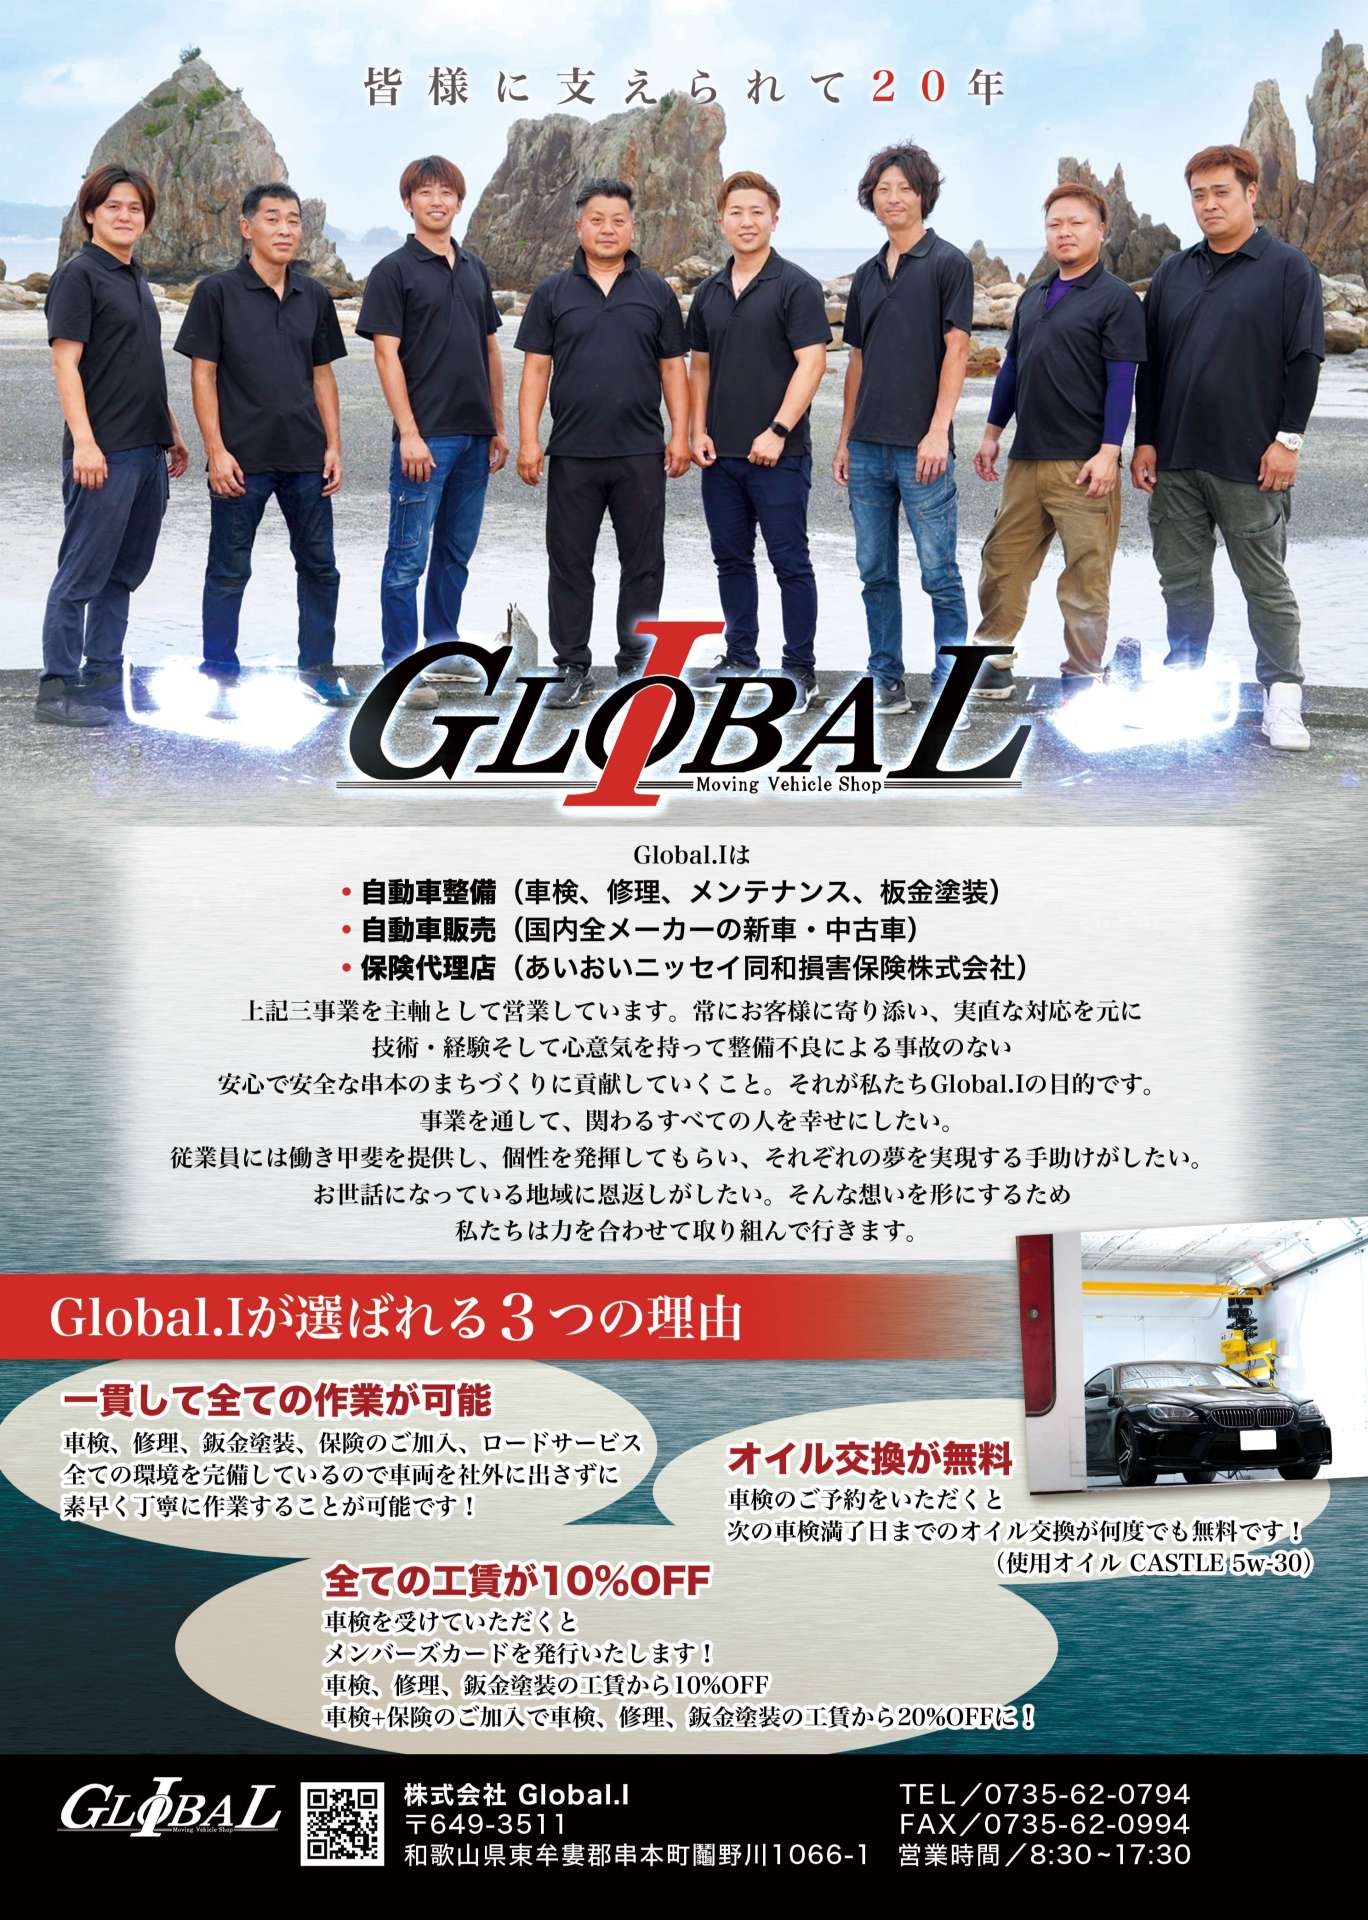 株式会社Global.I